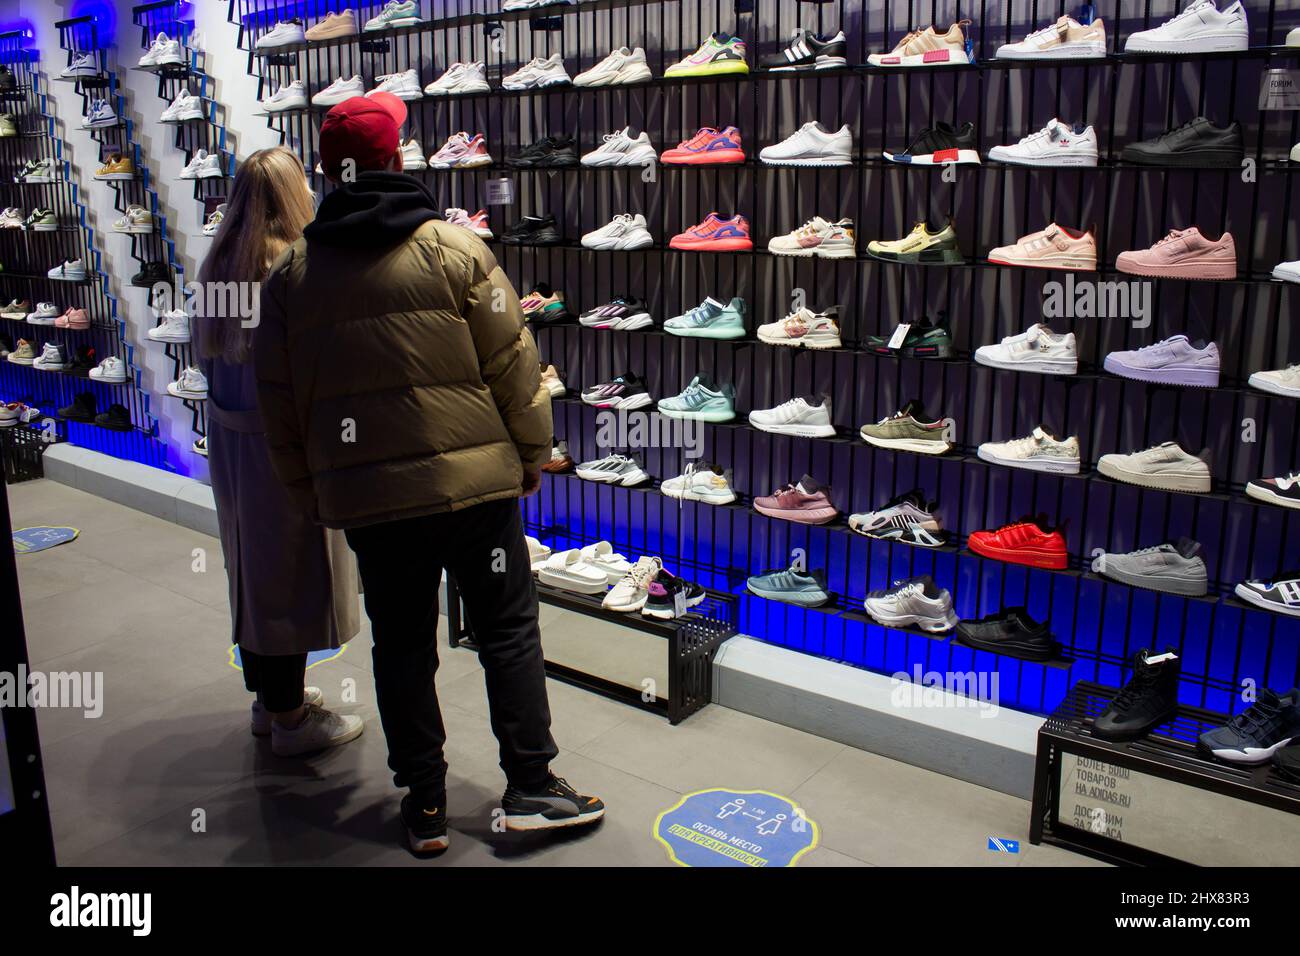 Mosca, Russia. 08th Mar 2022. Gli amanti dello shopping scelgono le  sneakers in una boutique Adidas a Mosca. Adidas dovrebbe cessare tutte le vendite  online e offline in Russia entro il 13